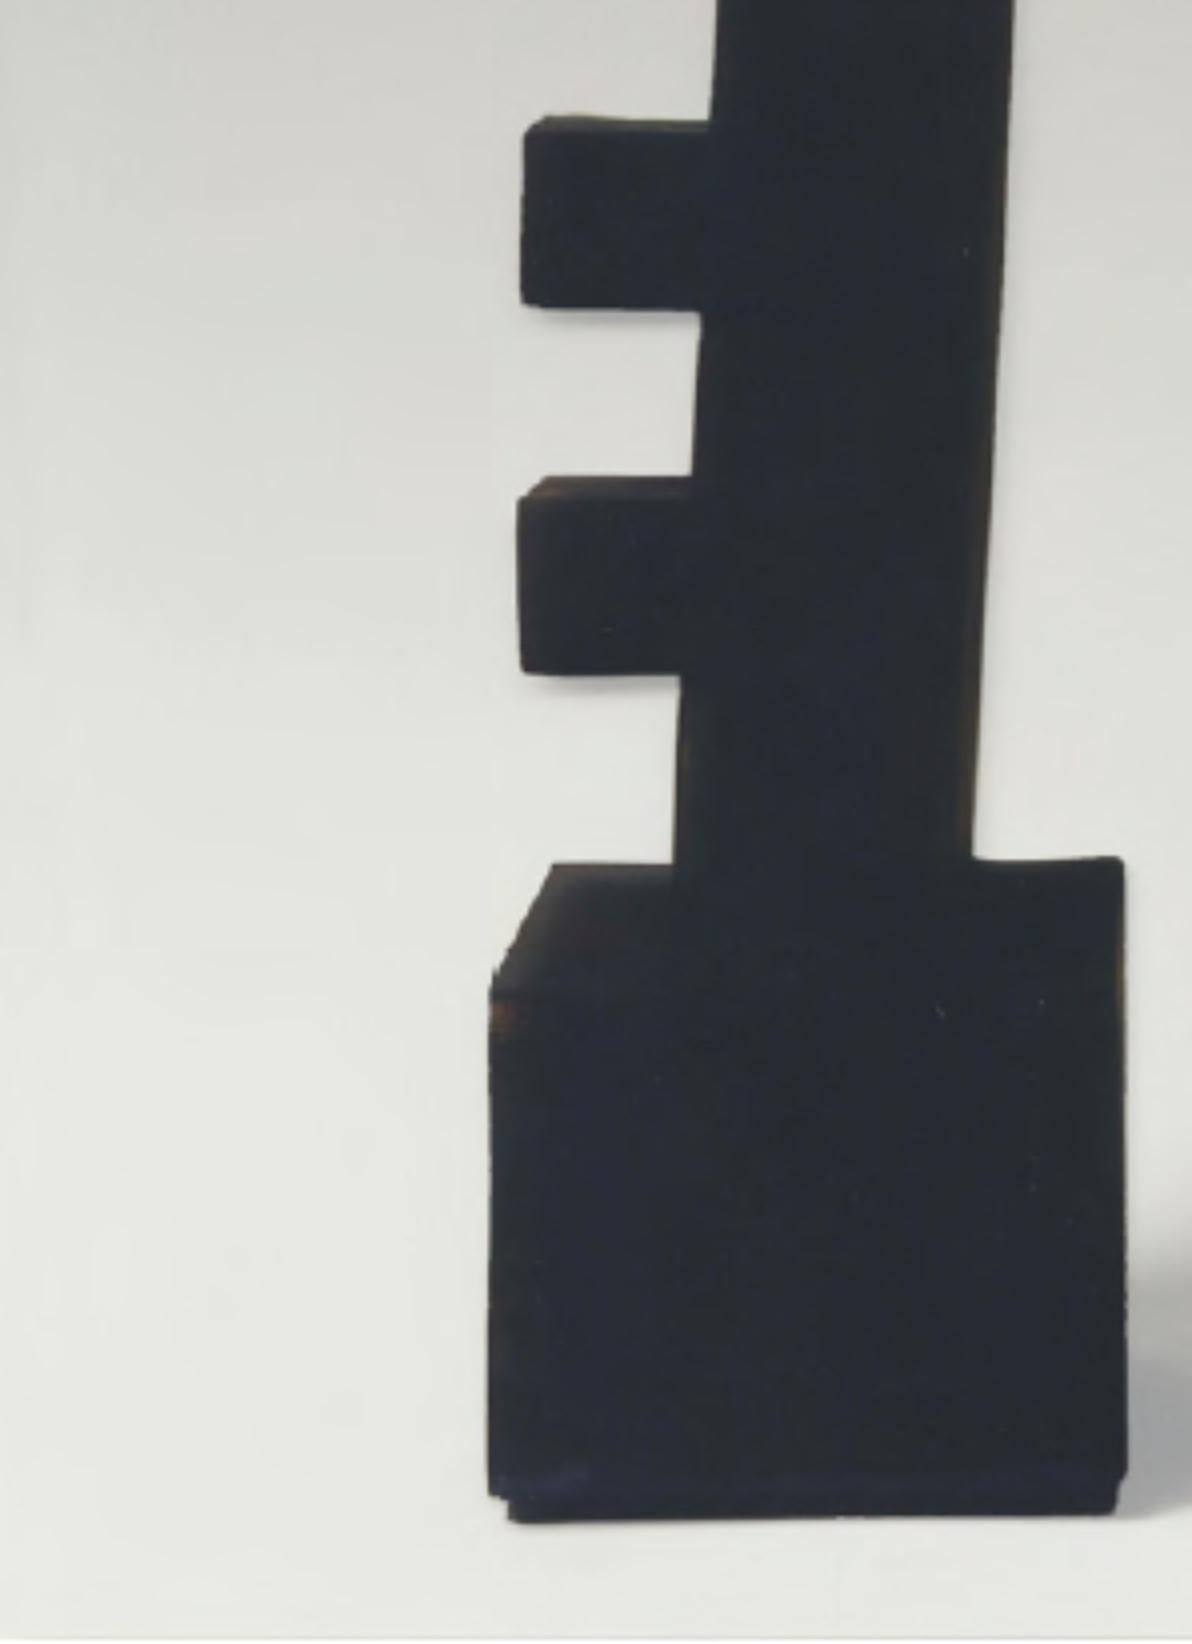 CF Te2.1 Terre par Caturegli Formica
Dimensions : L 45 x H 65 cm
Matériaux : Céramique

Terres, Dakar, Sénégal, 1987-1991 

TERRES est une série de sculptures symboliques en céramique produites à Dakar, au Sénégal, dans l'atelier 